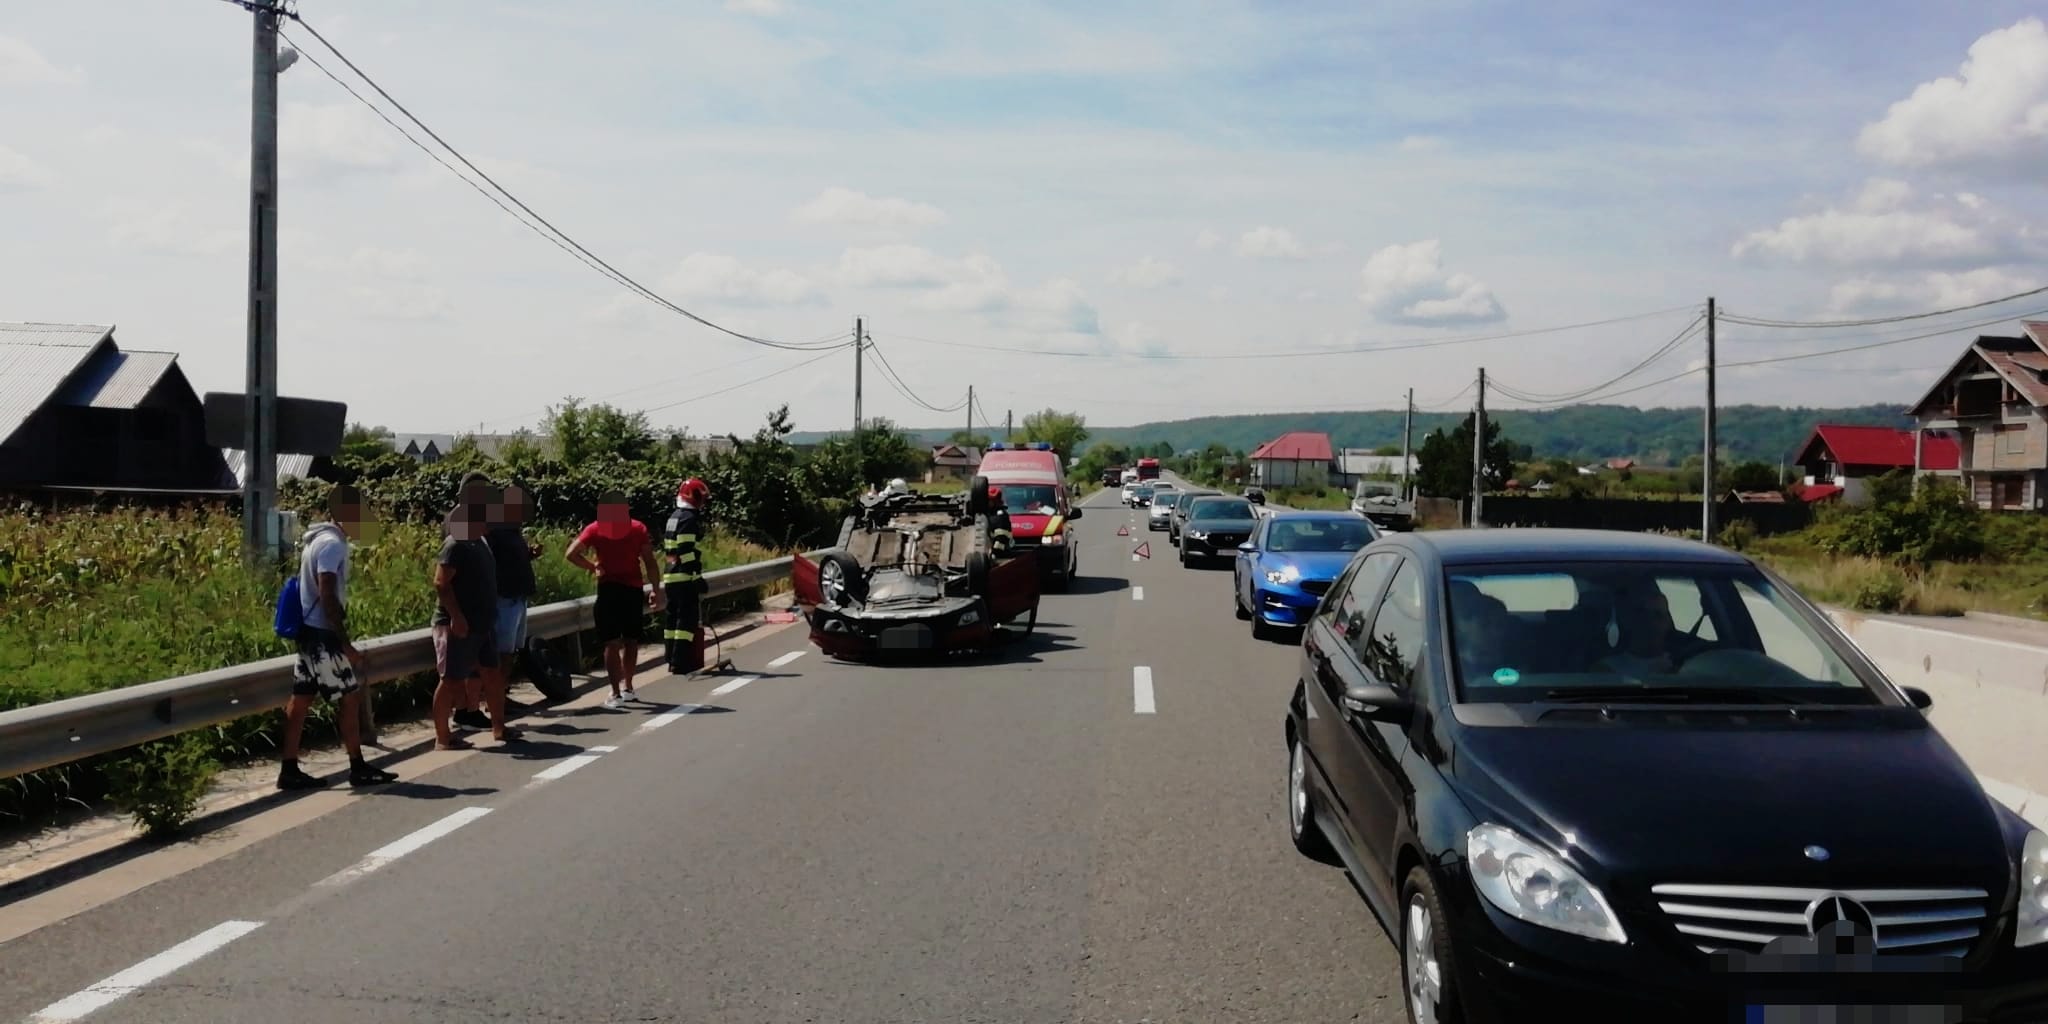 Autoturism răsturnat pe DN73 în localitatea Micești